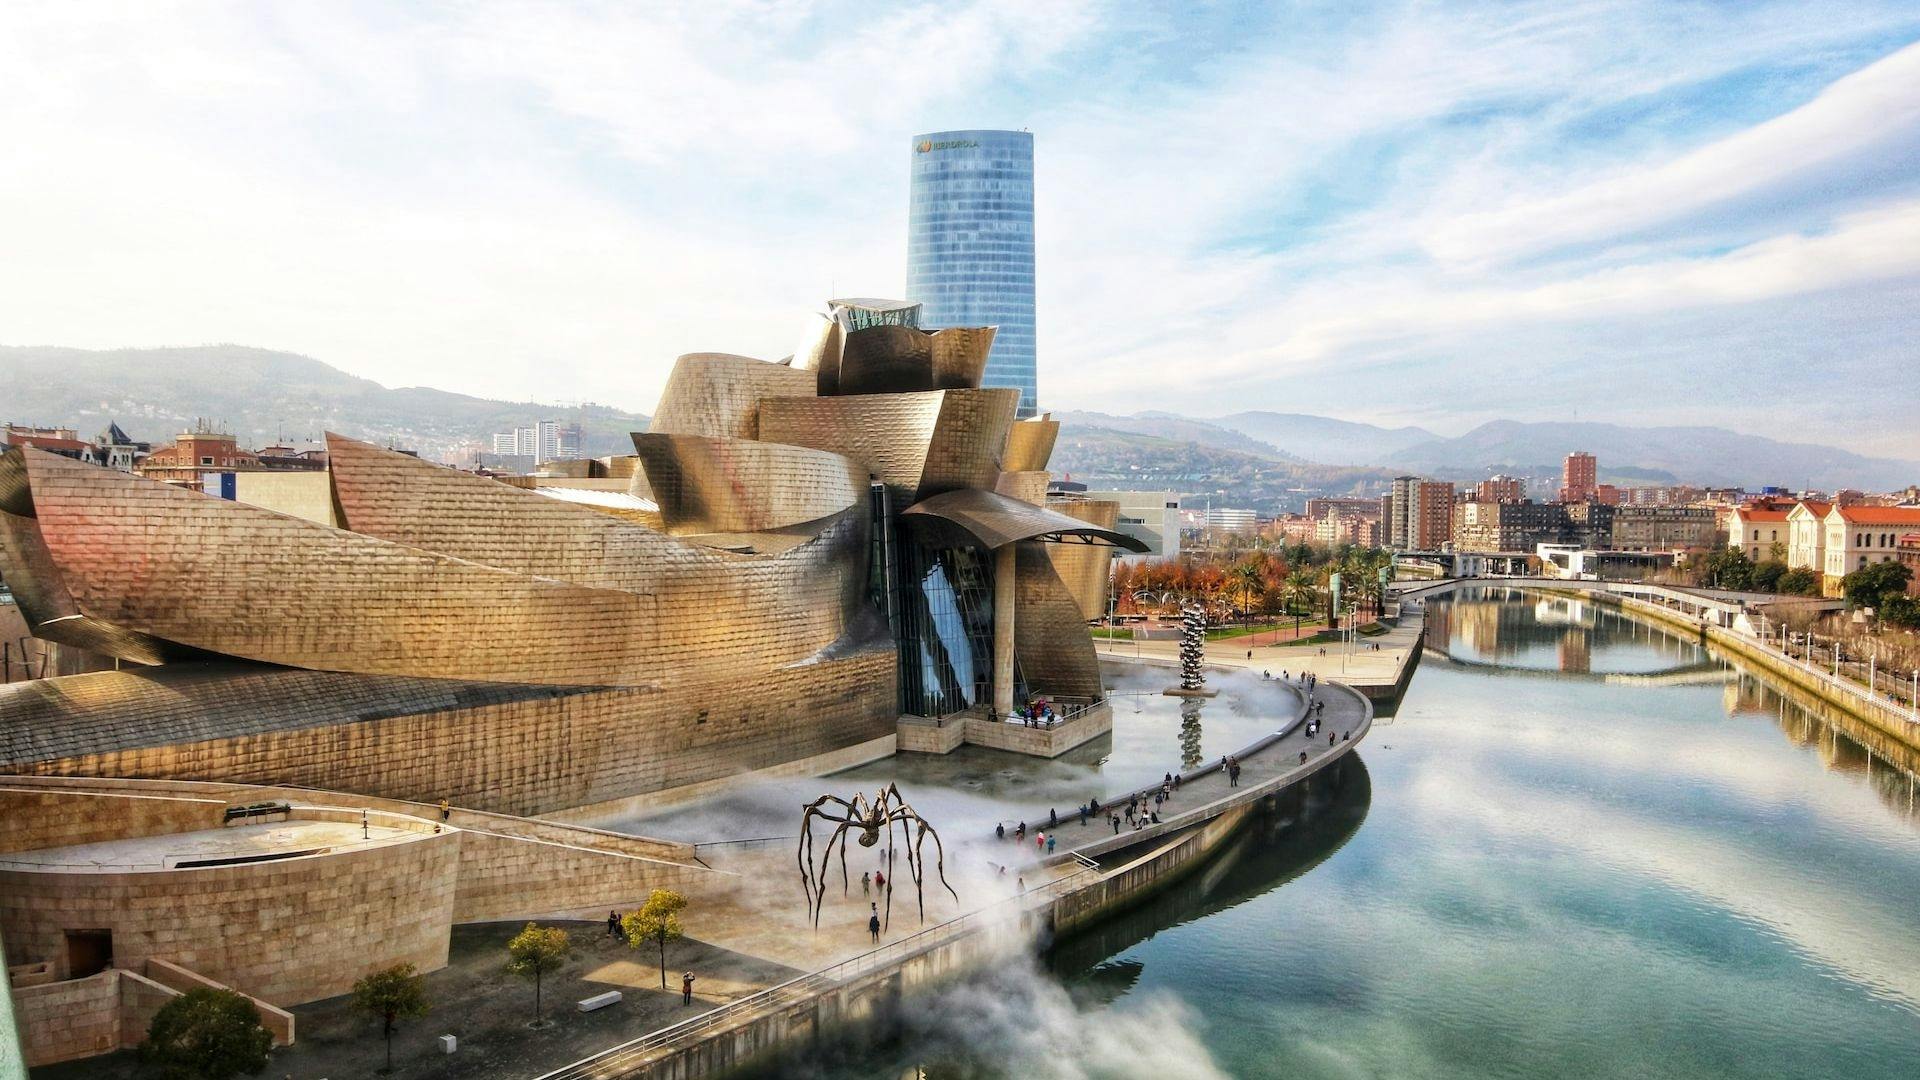 Eintrittskarte für das Bilbao Guggenheim Museum